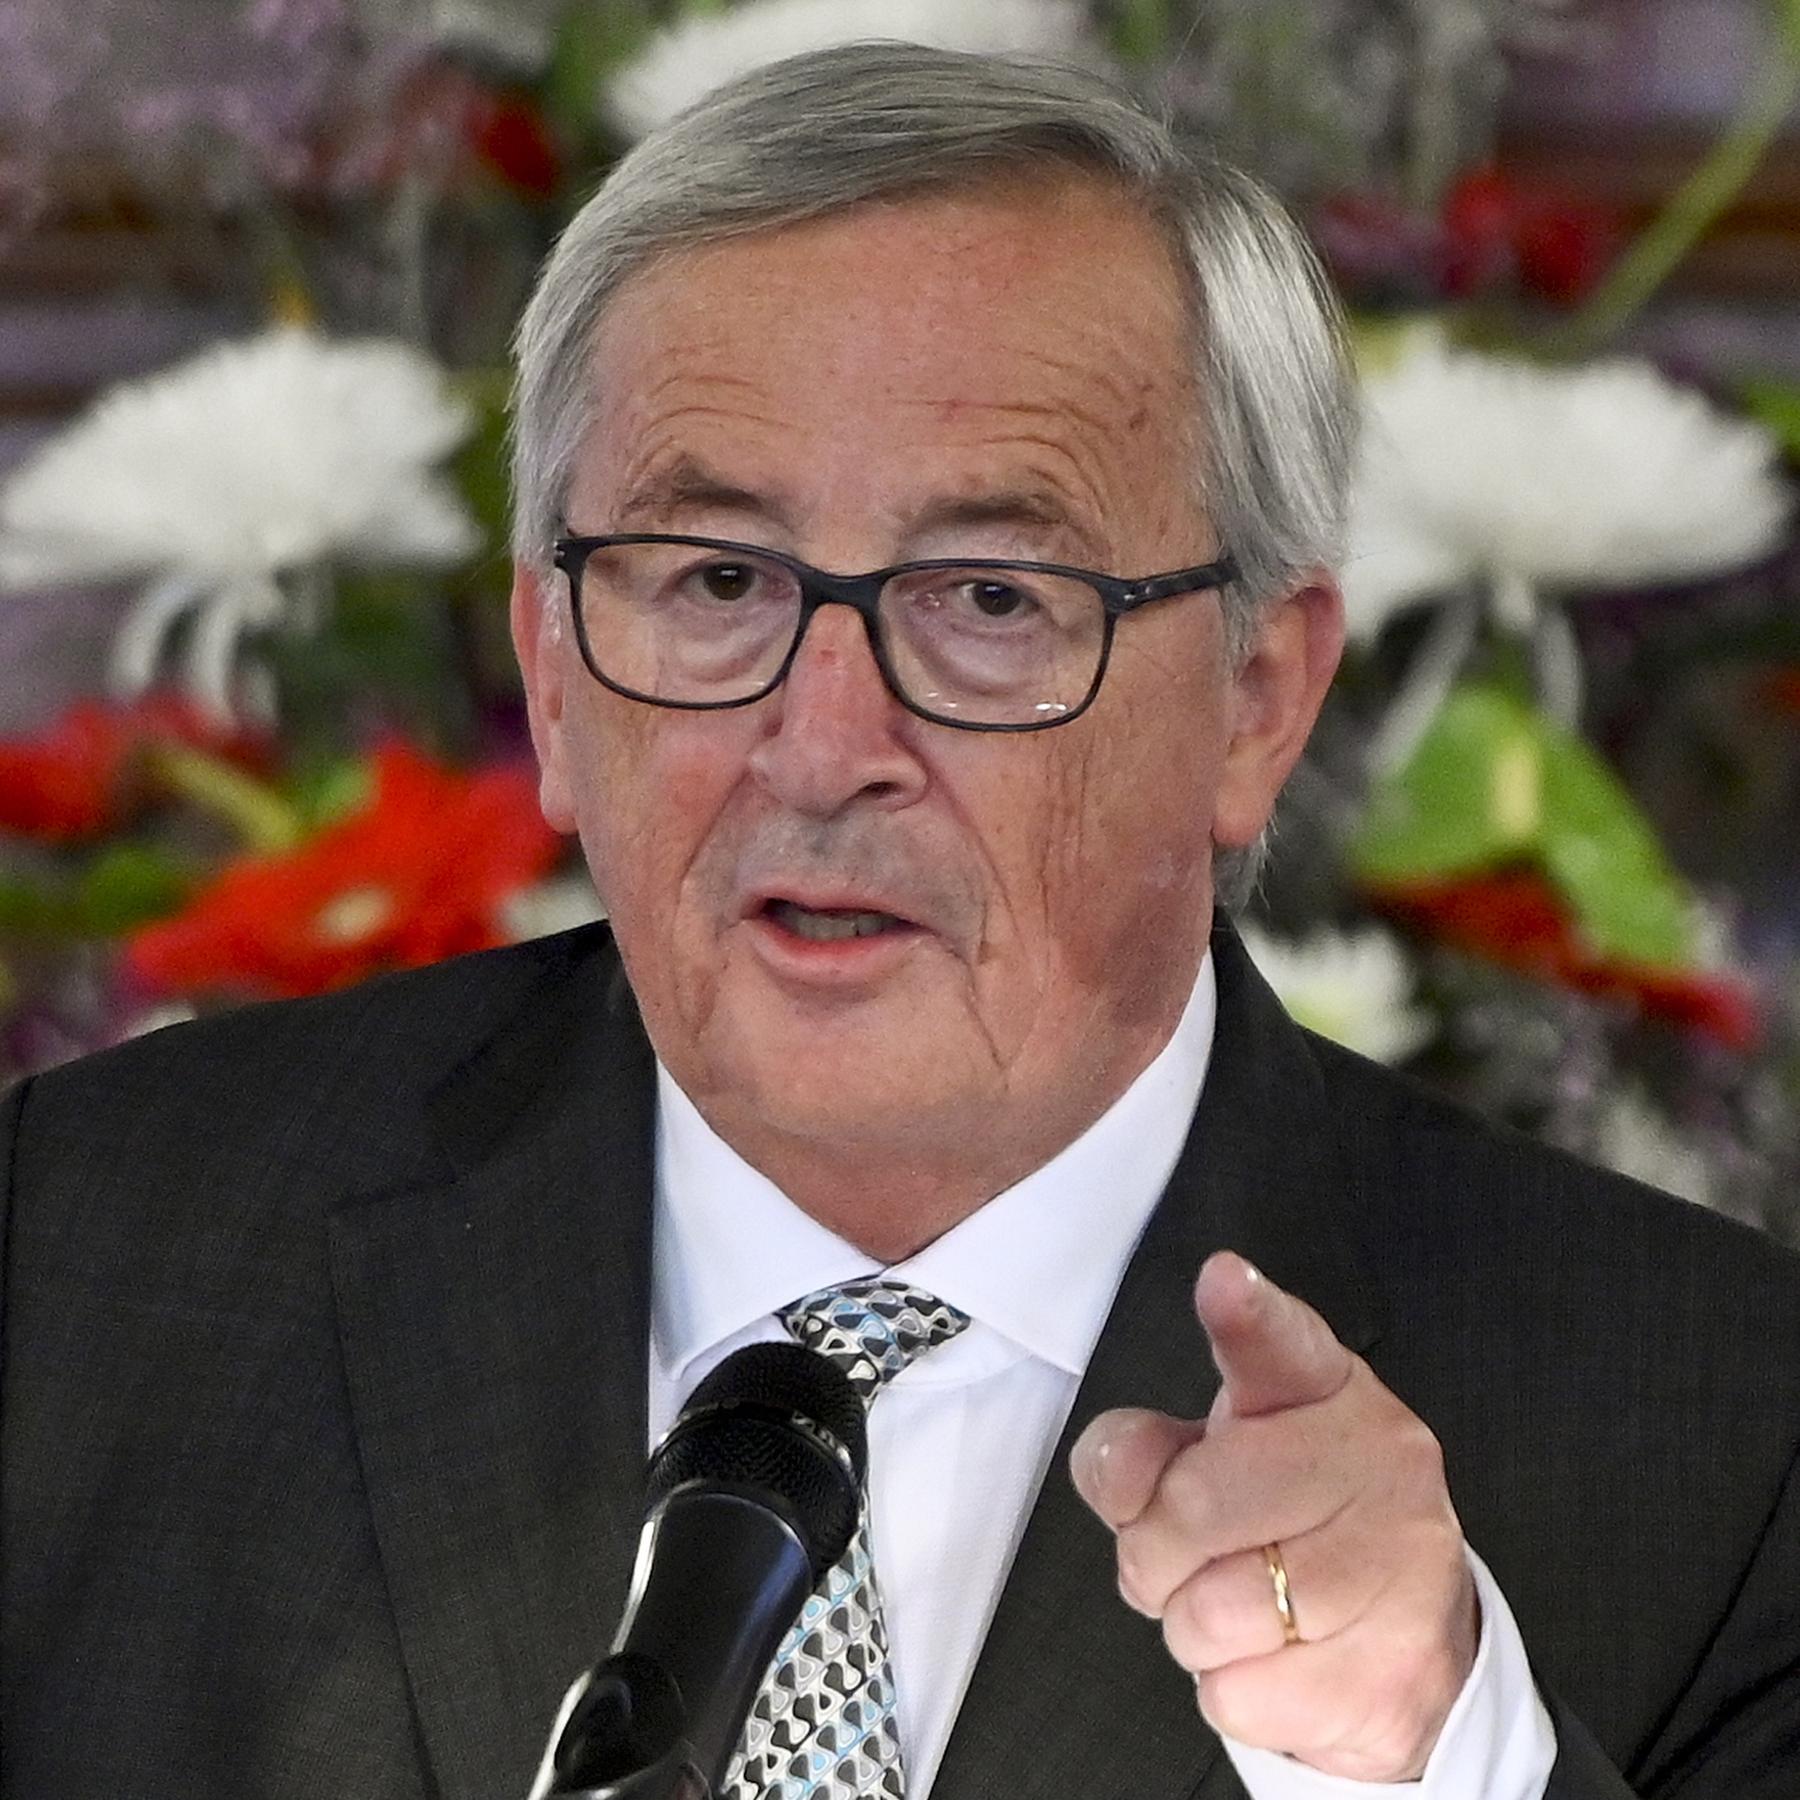 Juncker zu EU-Osterweiterung: ”Es gab ein Stück vom Mantel Gottes zu fassen”